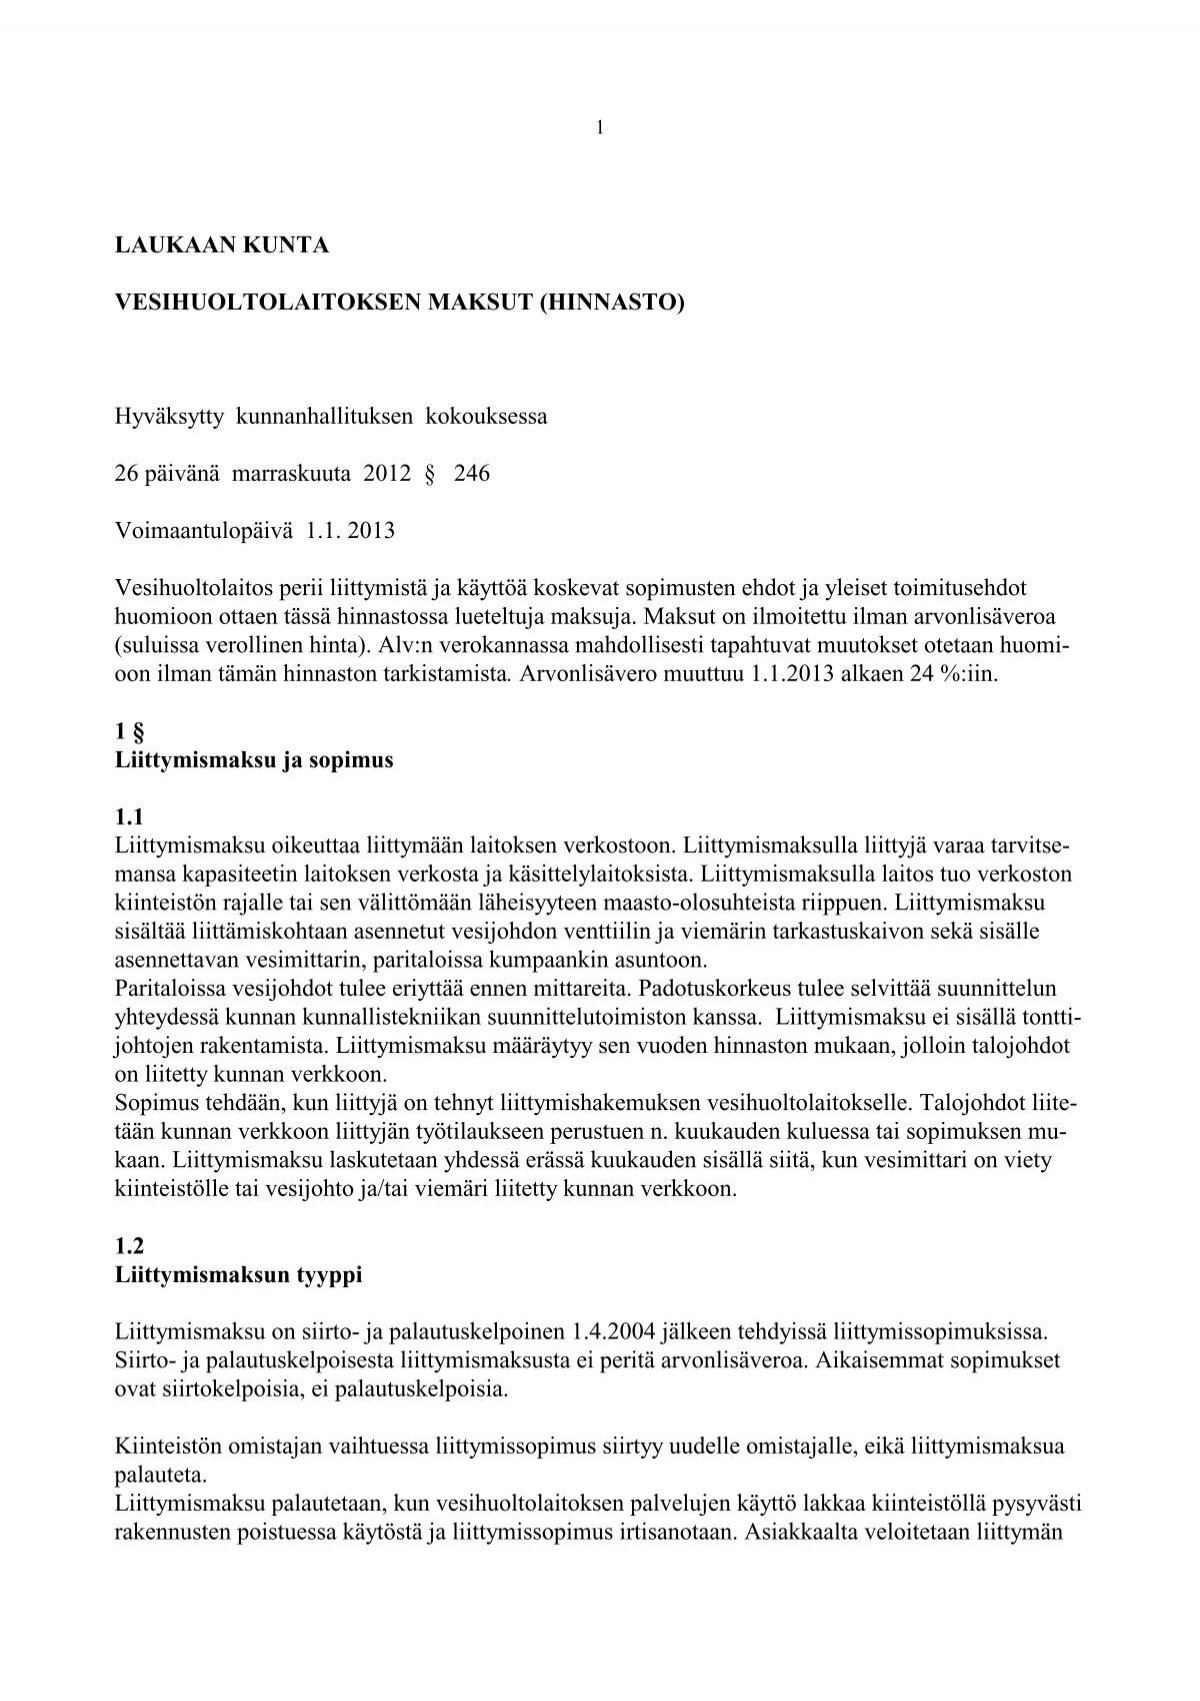 Vesihuoltolaitoksen maksut 1.1.2013 - Laukaa